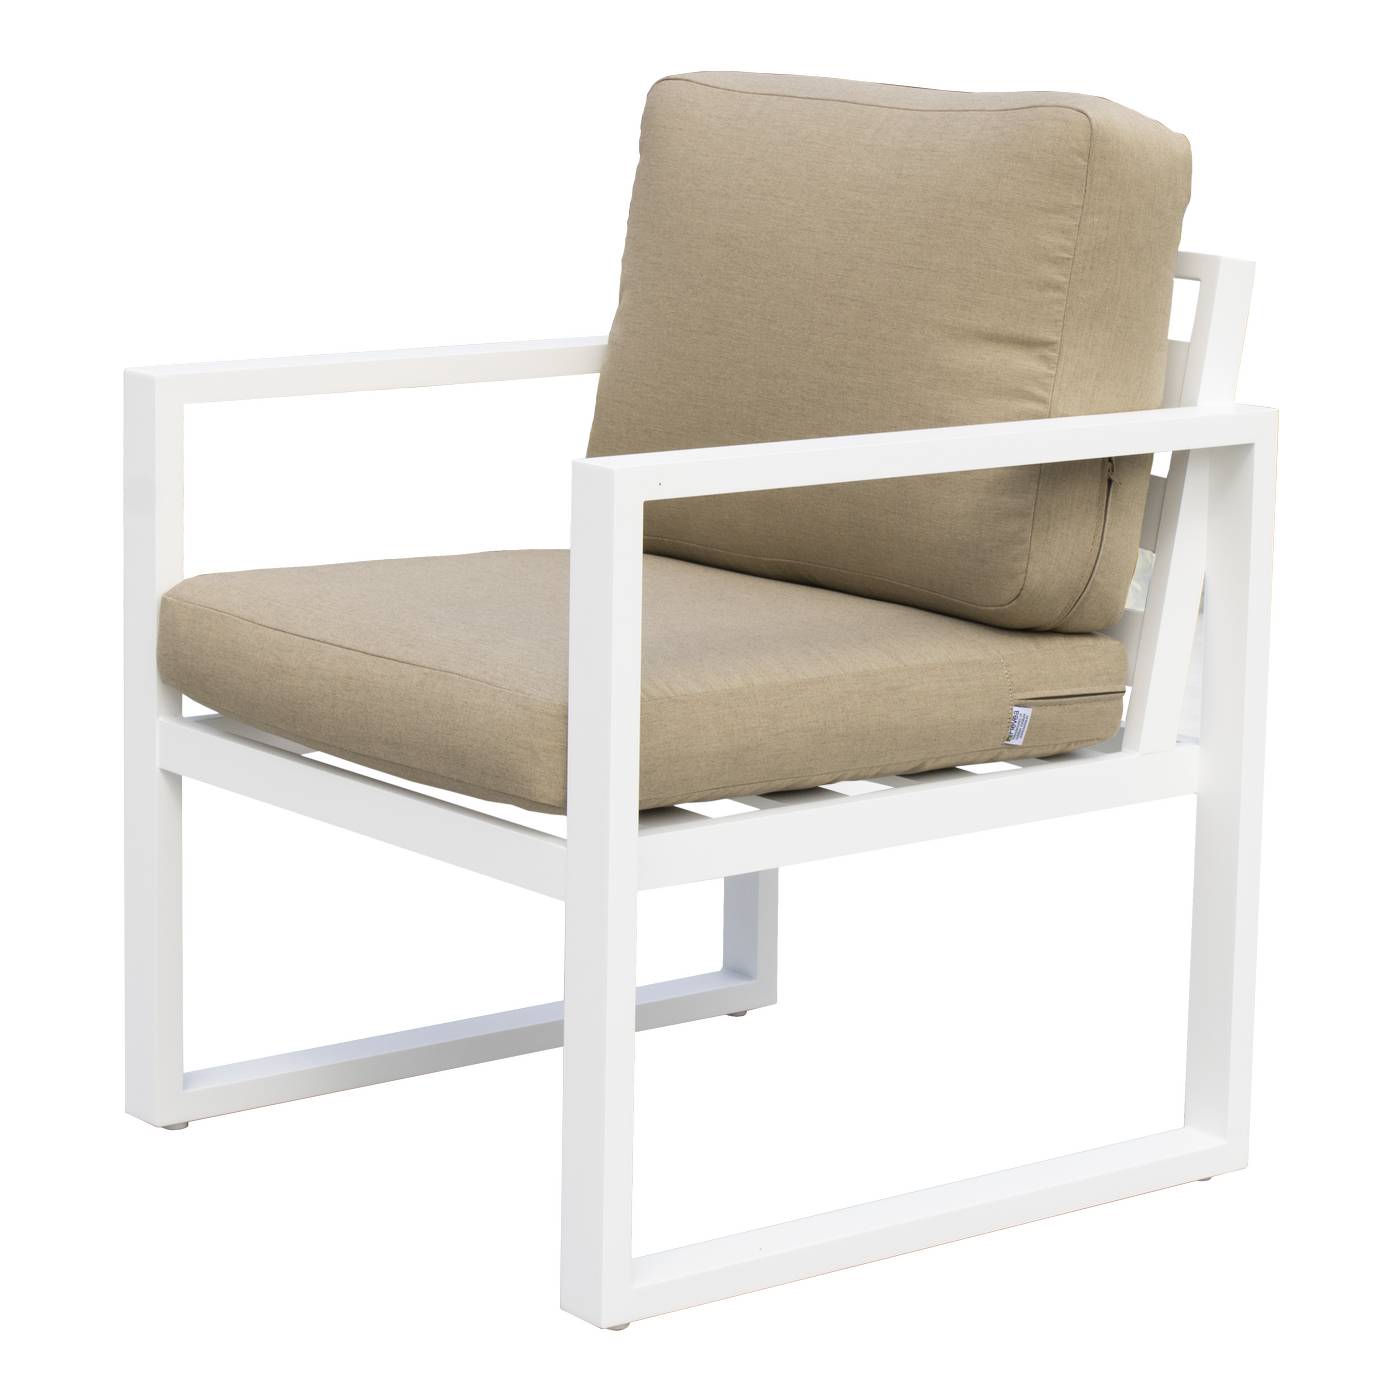 Sofá 2p + 2 sillones + mesa de aluminio [Fenix] - Conjunto de aluminio para jardín: 1 sofá 2 plazas + 2 sillones + 1 mesa de centro. Disponible en cinco colores diferentes.